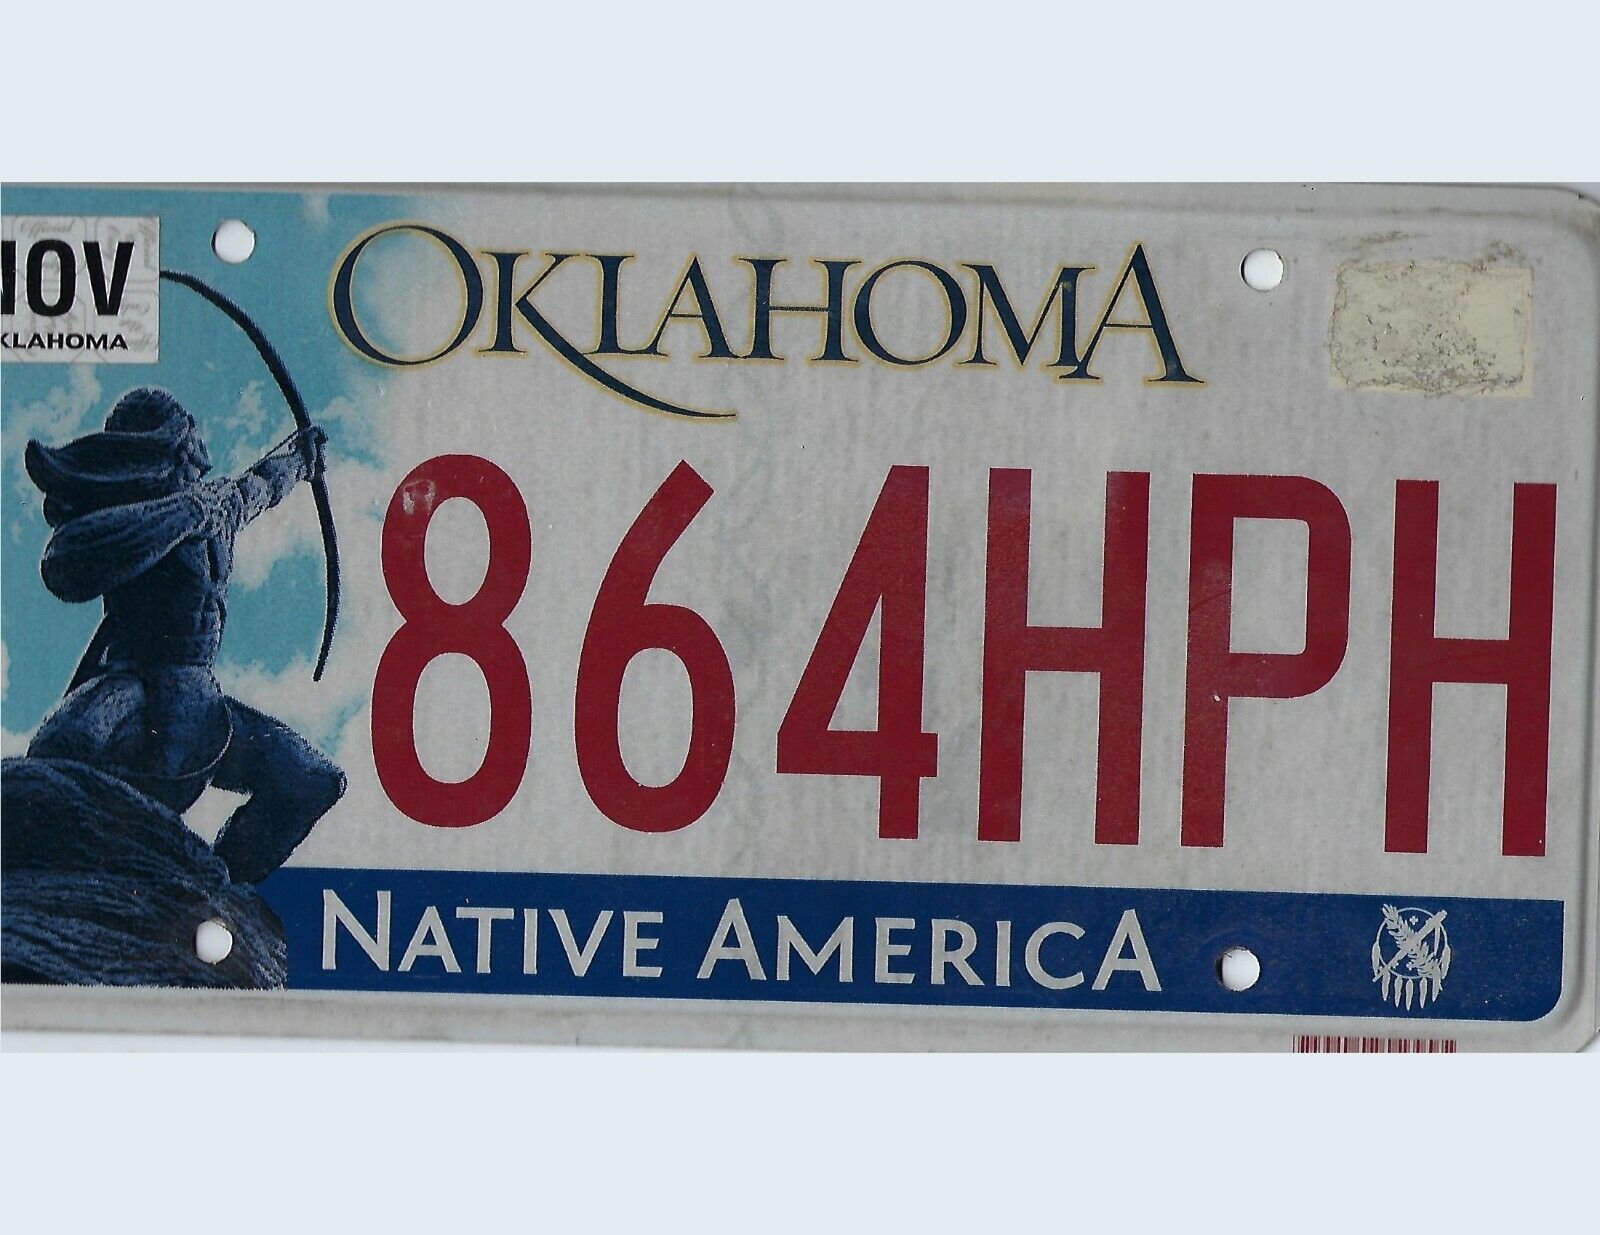  Vintage License Plate  Oklahoma NATIVE AMERICA Tag # 864HPH 